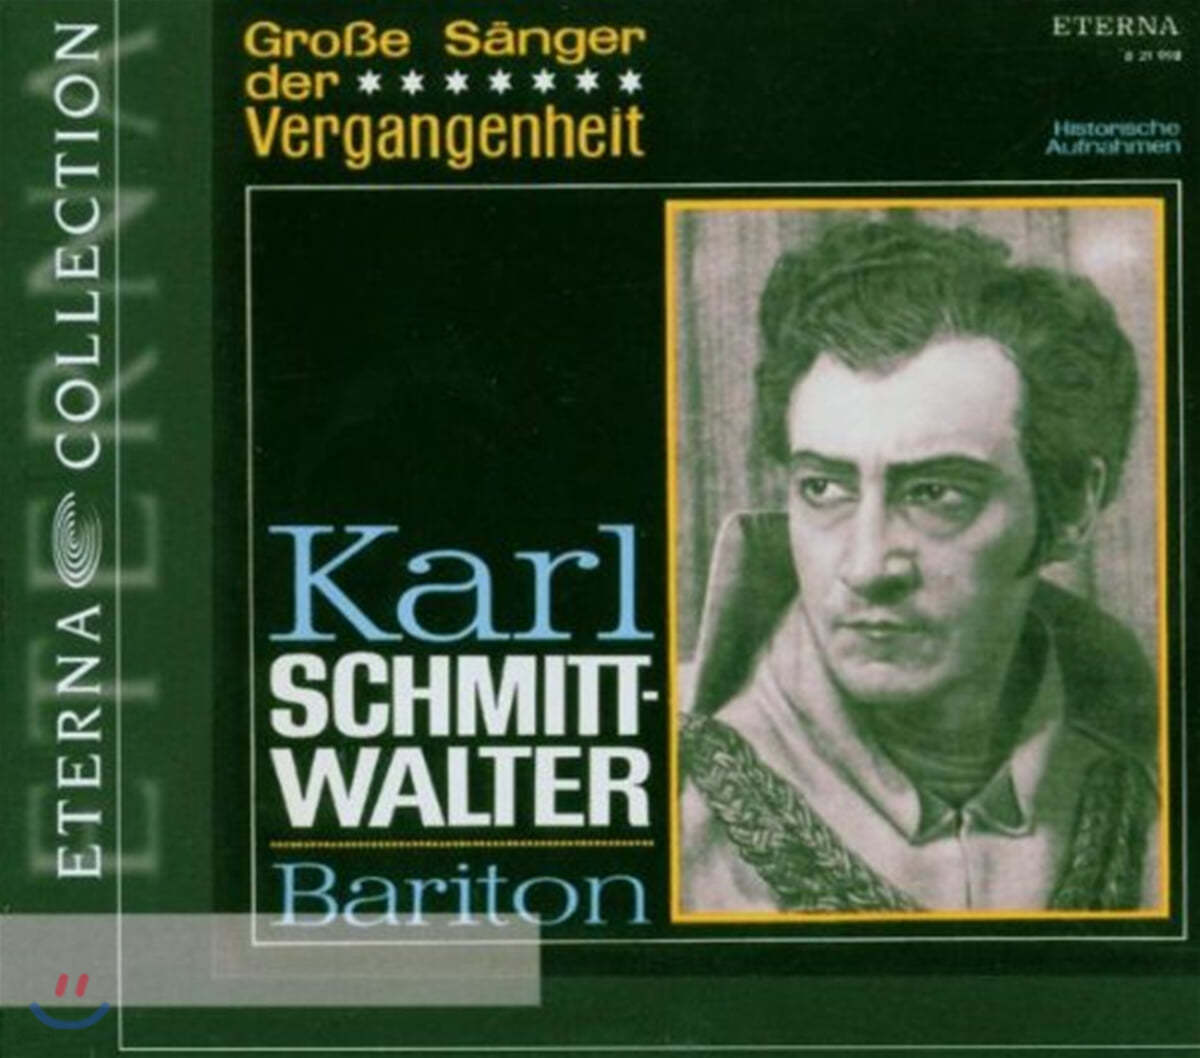 과거의 위대한 성악가 모음곡집 - 바리톤 칼 슈미트 발터 (Grobe Sanger Der Vergangenheit - Karl Schmitt-walter) 